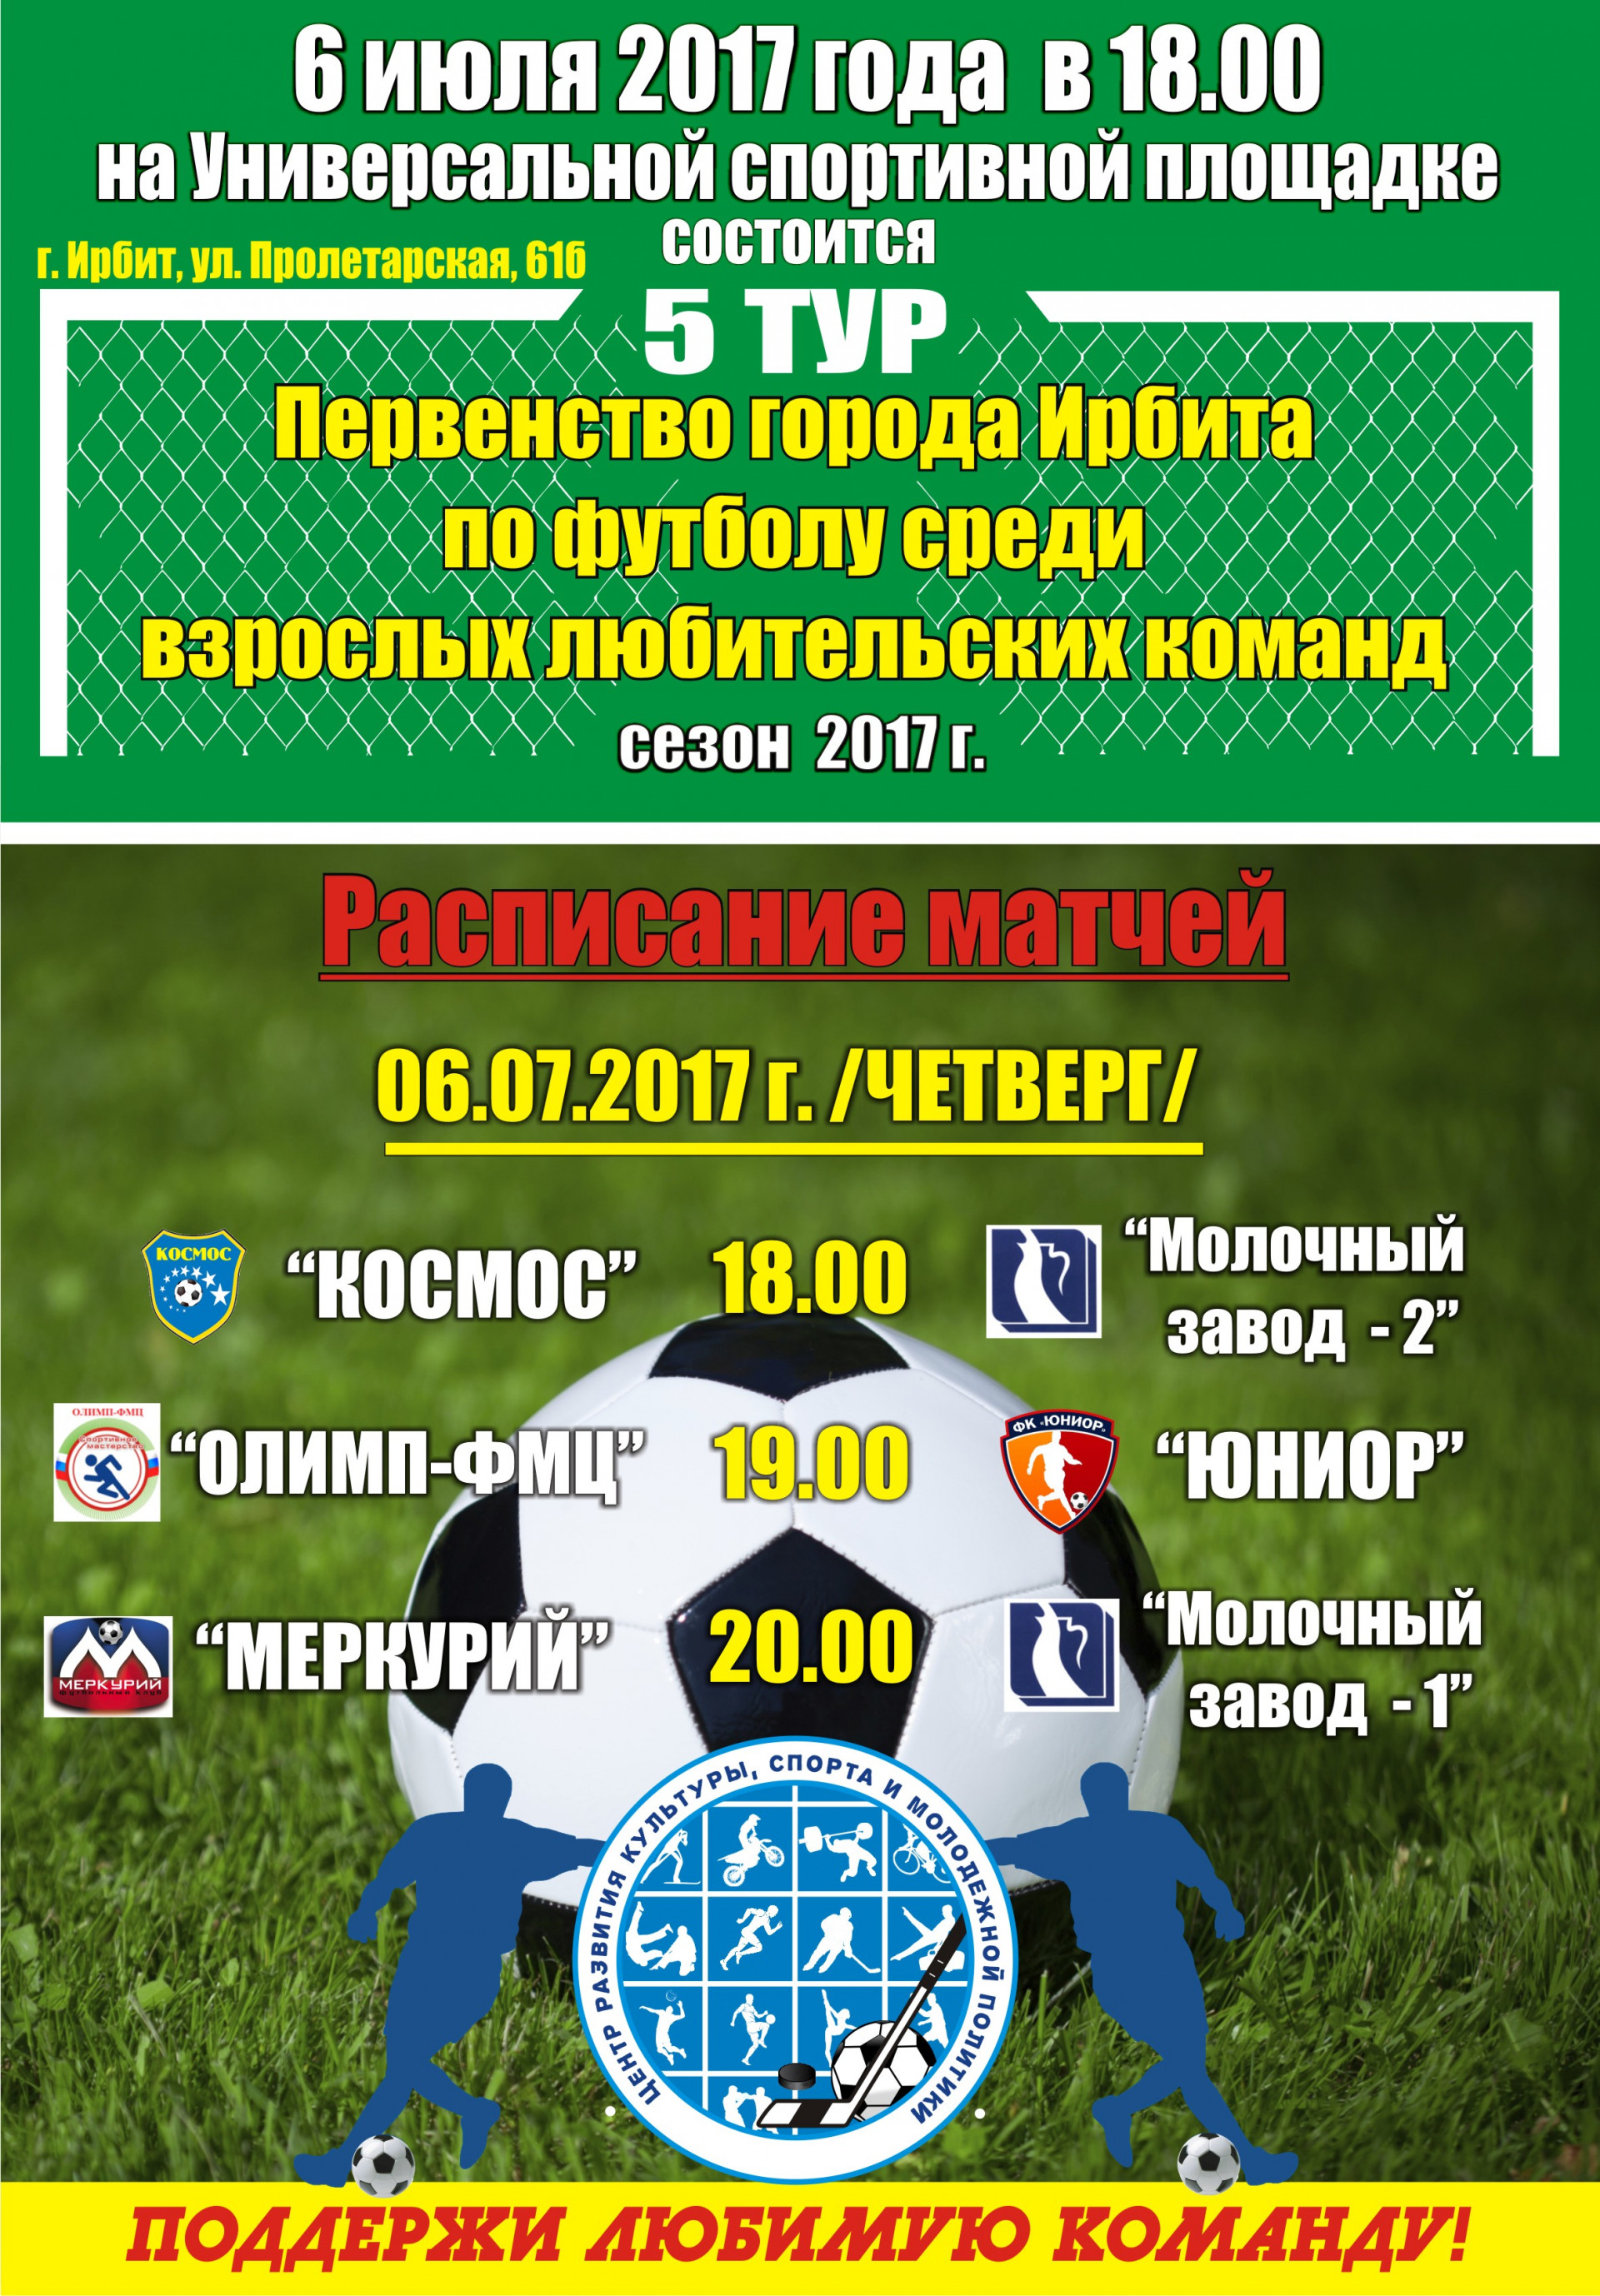 5-й тур Первенства города Ирбита по футболу среди взрослых любительских команд